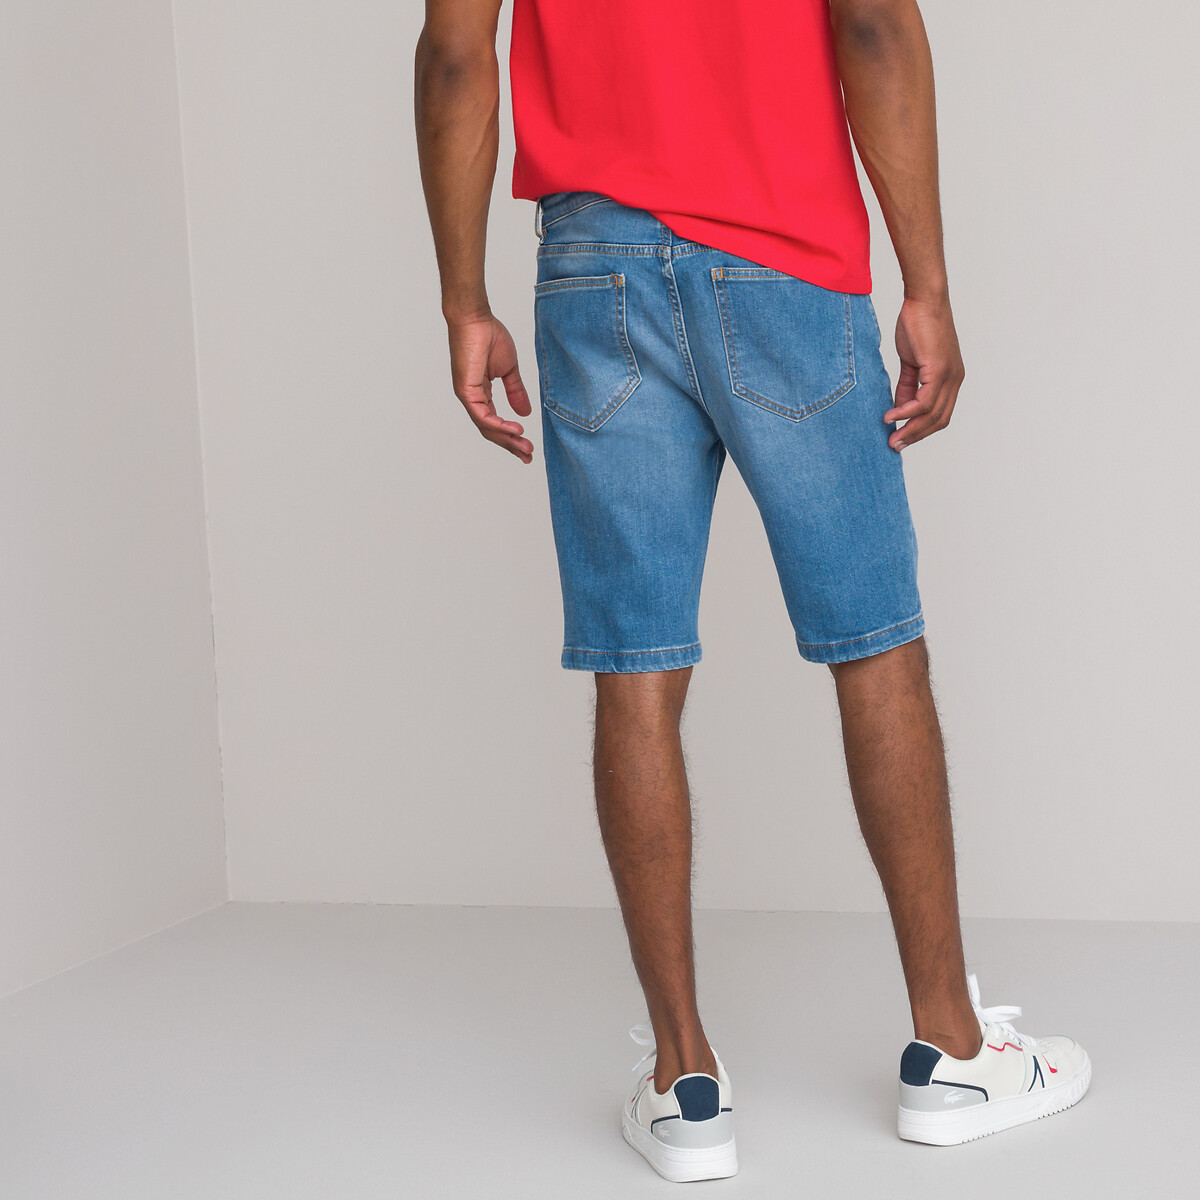 La Redoute Garçon Vêtements Pantalons & Jeans Pantalons courts Bermudas Short 